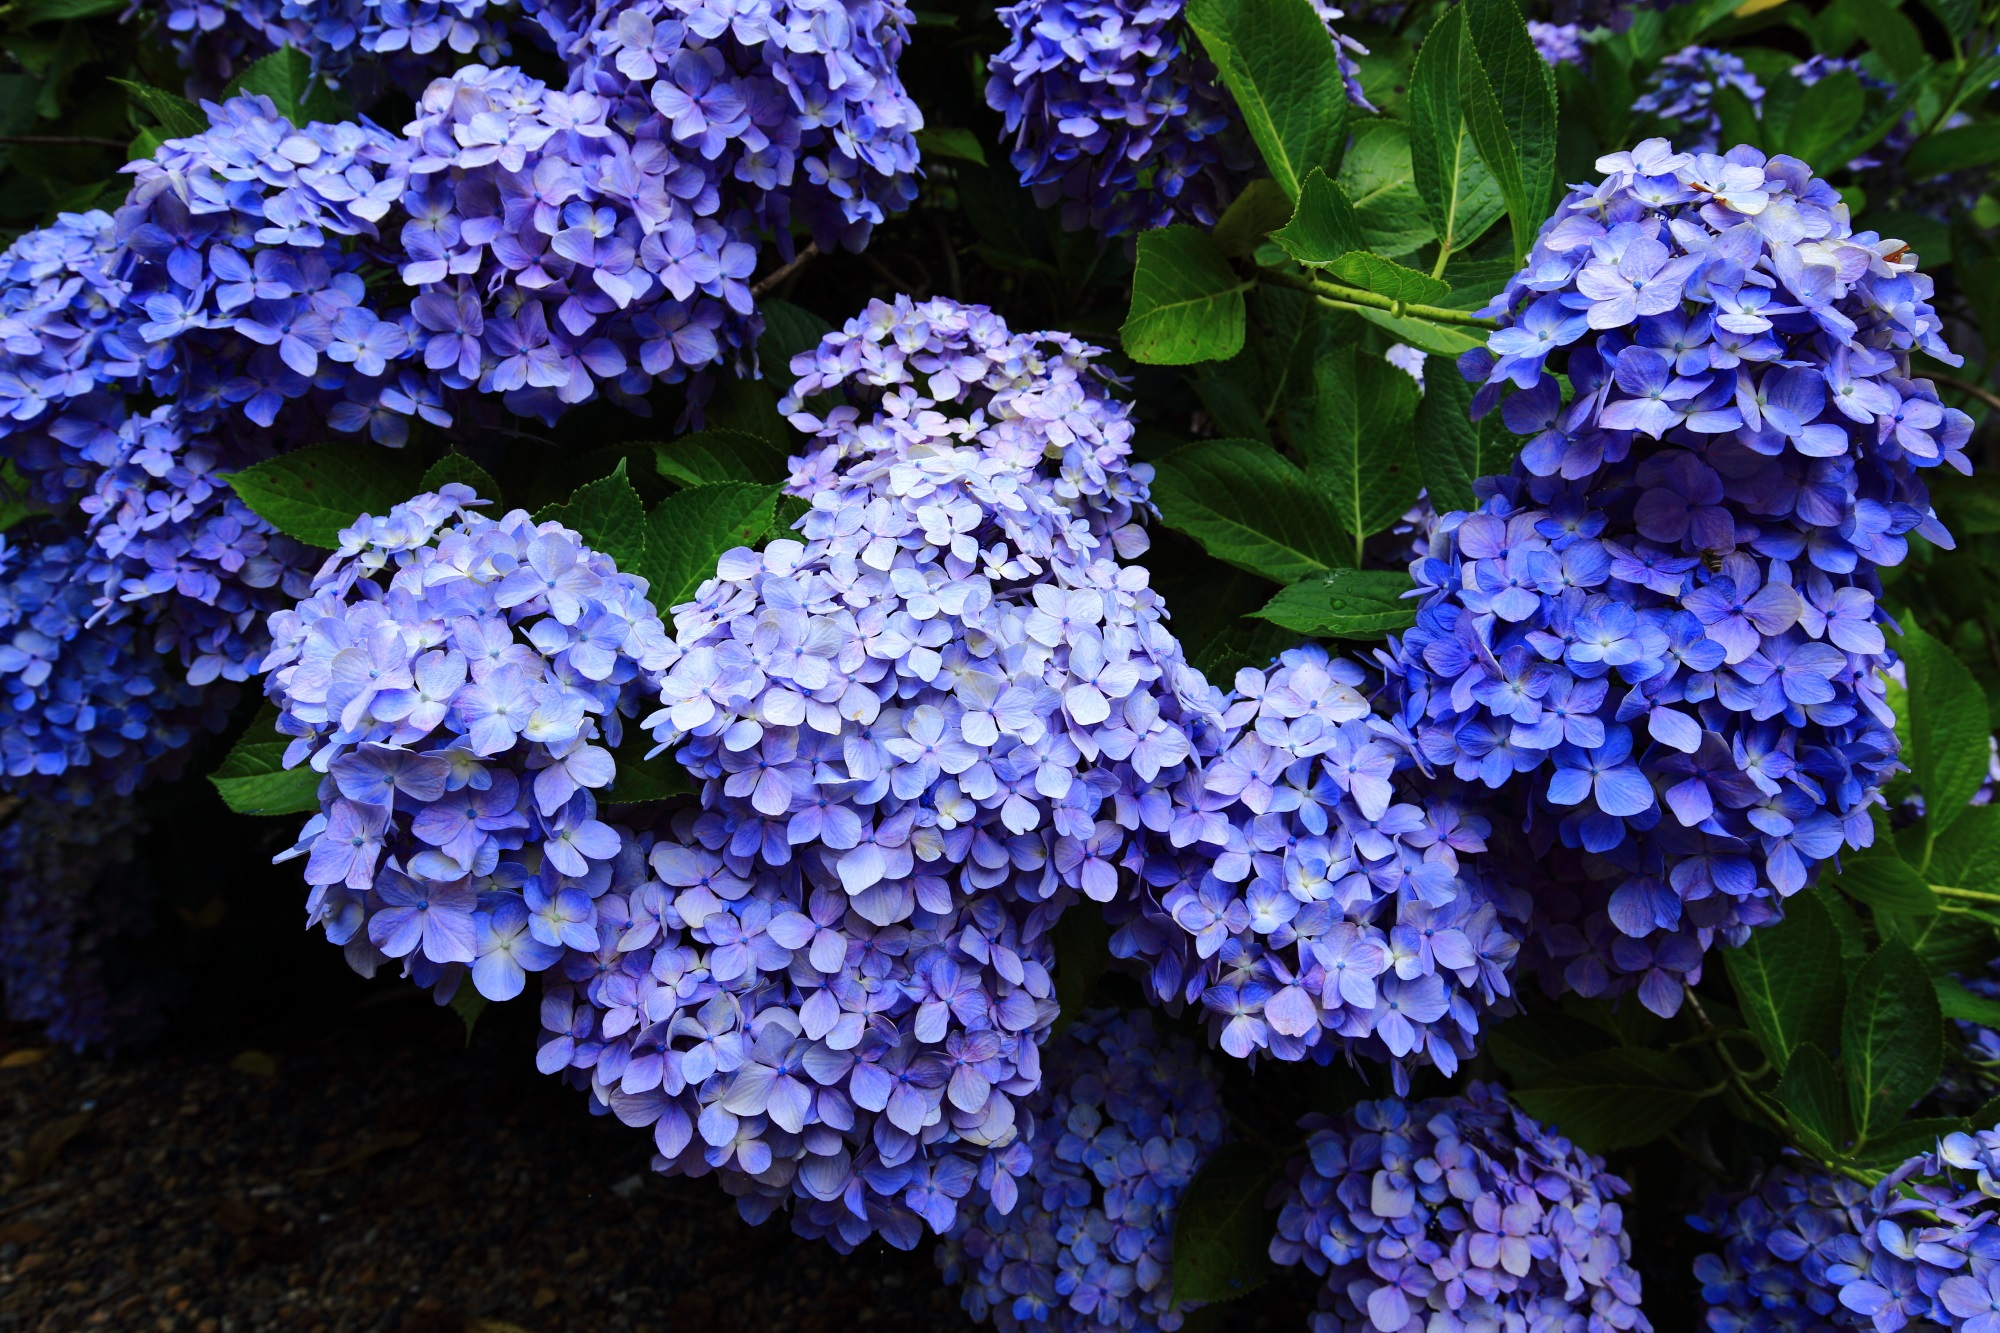 丹州観音寺の鮮やかに煌く独特の色合いの青系の紫陽花